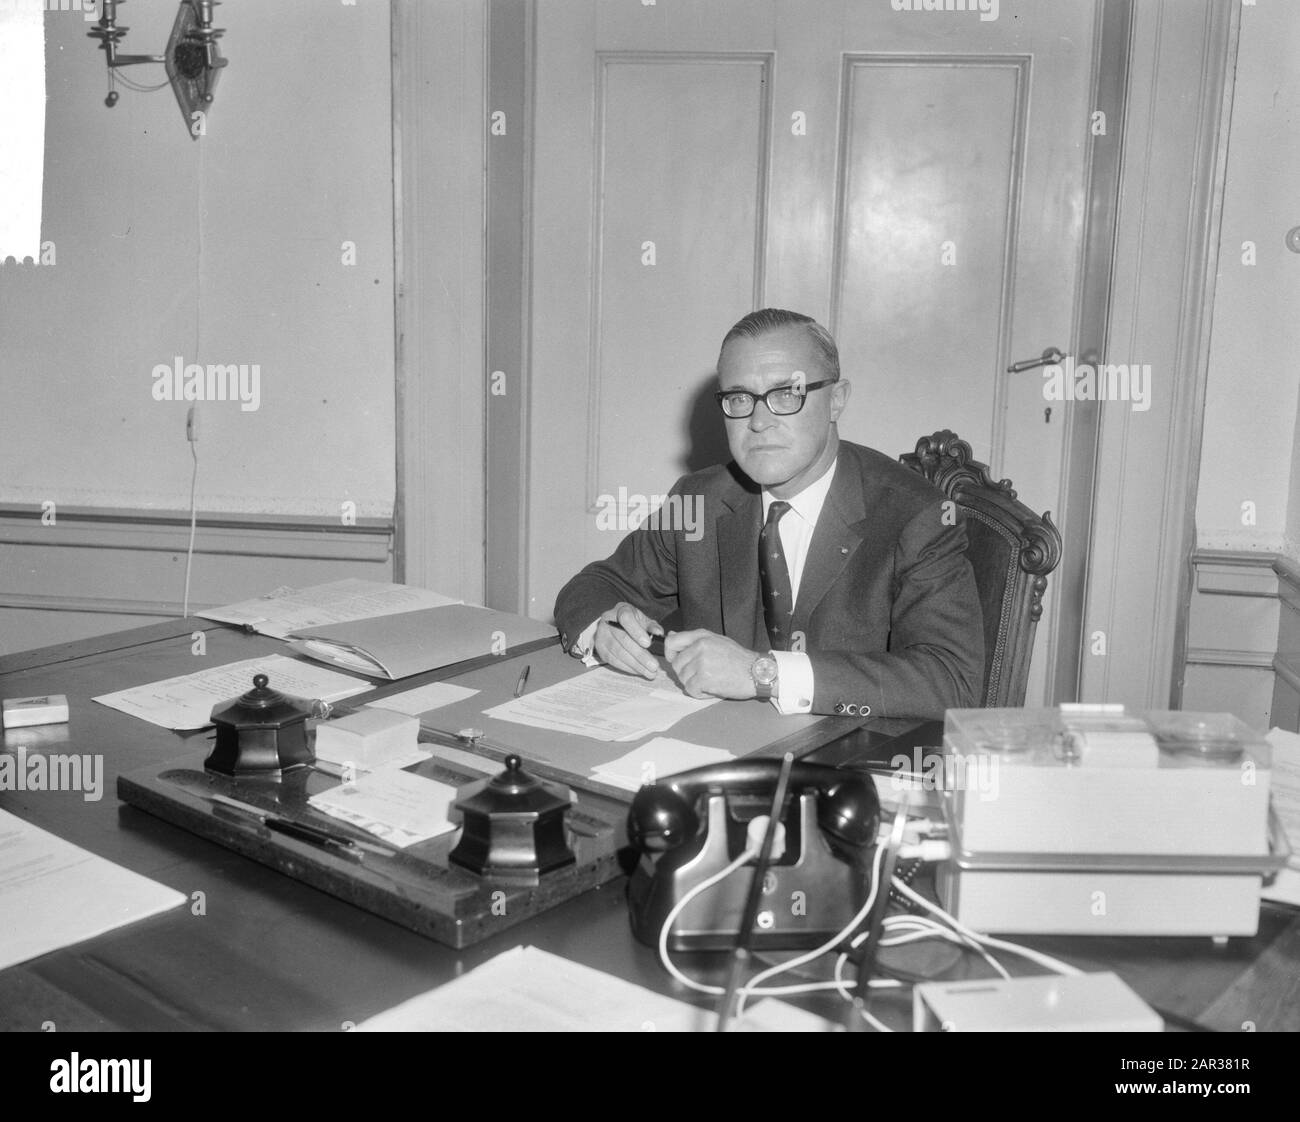 Mr. J.G. van Schelle secretary of Mr. Claus von Amsberg, here in his room [in Paleis Noordeinde] Date: September 3, 1965 Keywords: chambers, secretaries Stock Photo